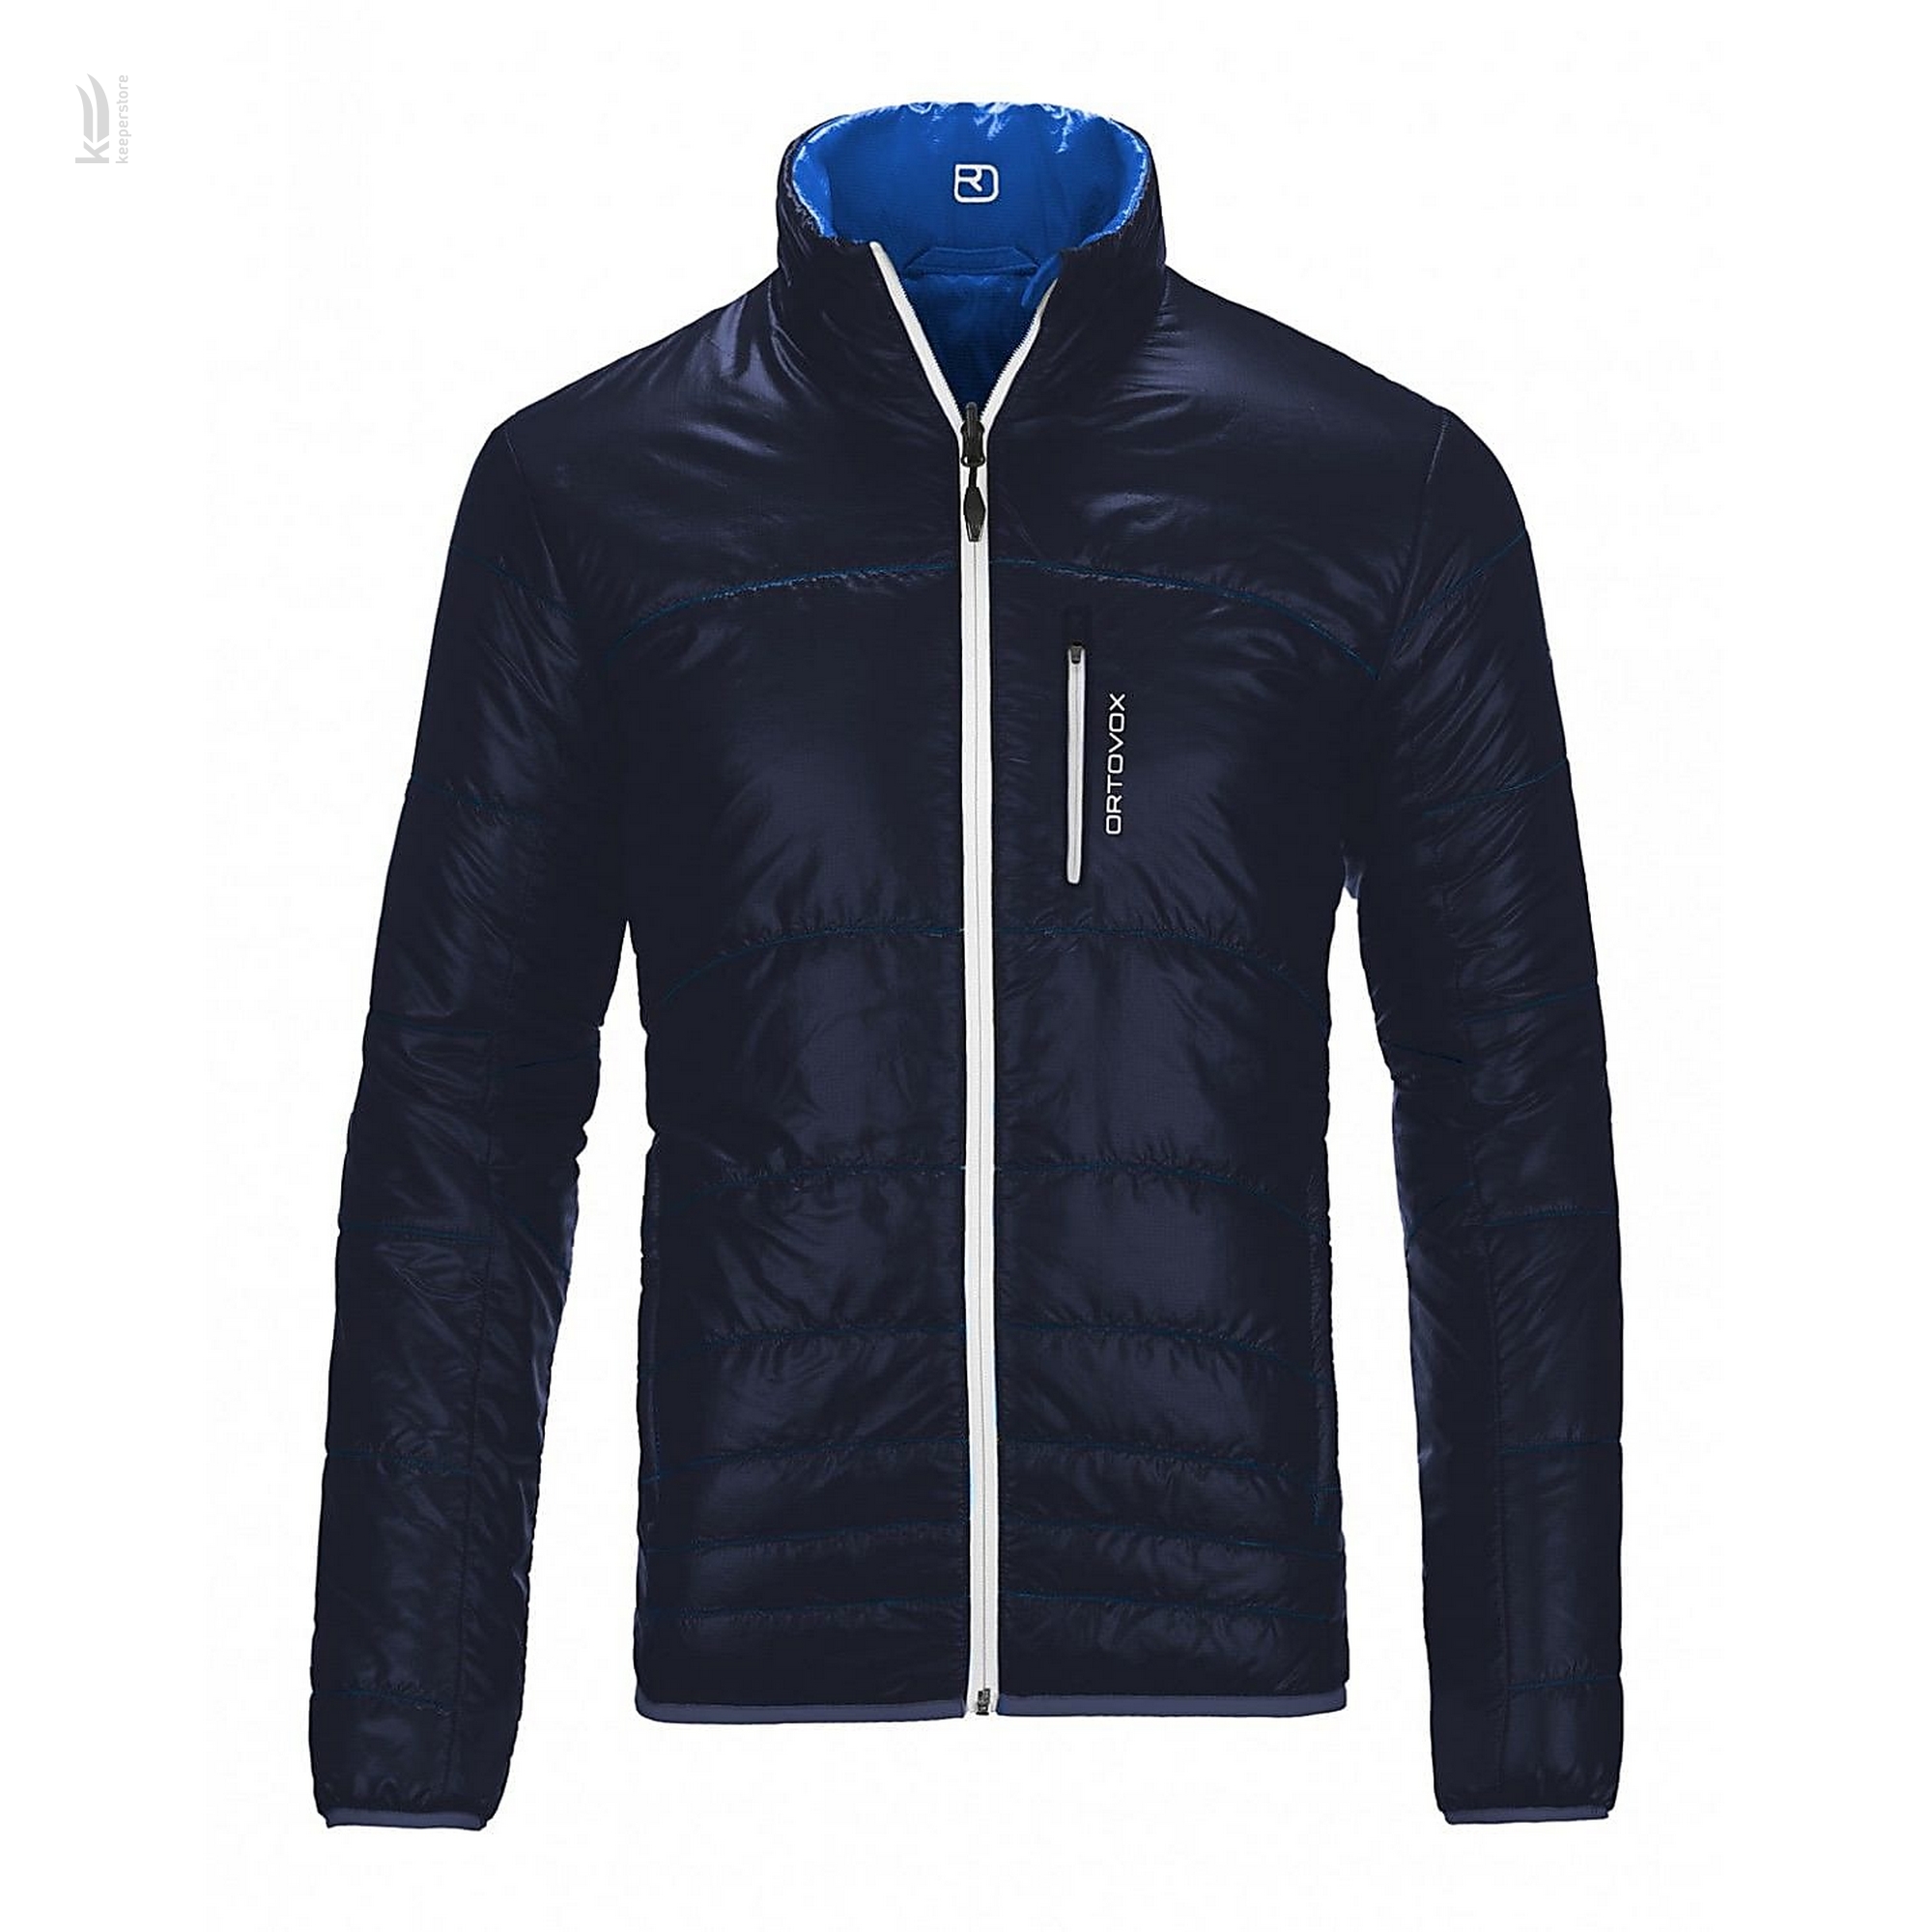 Фрирайд куртка Ortovox Swisswool Piz Boval Jacket Blue Navy M